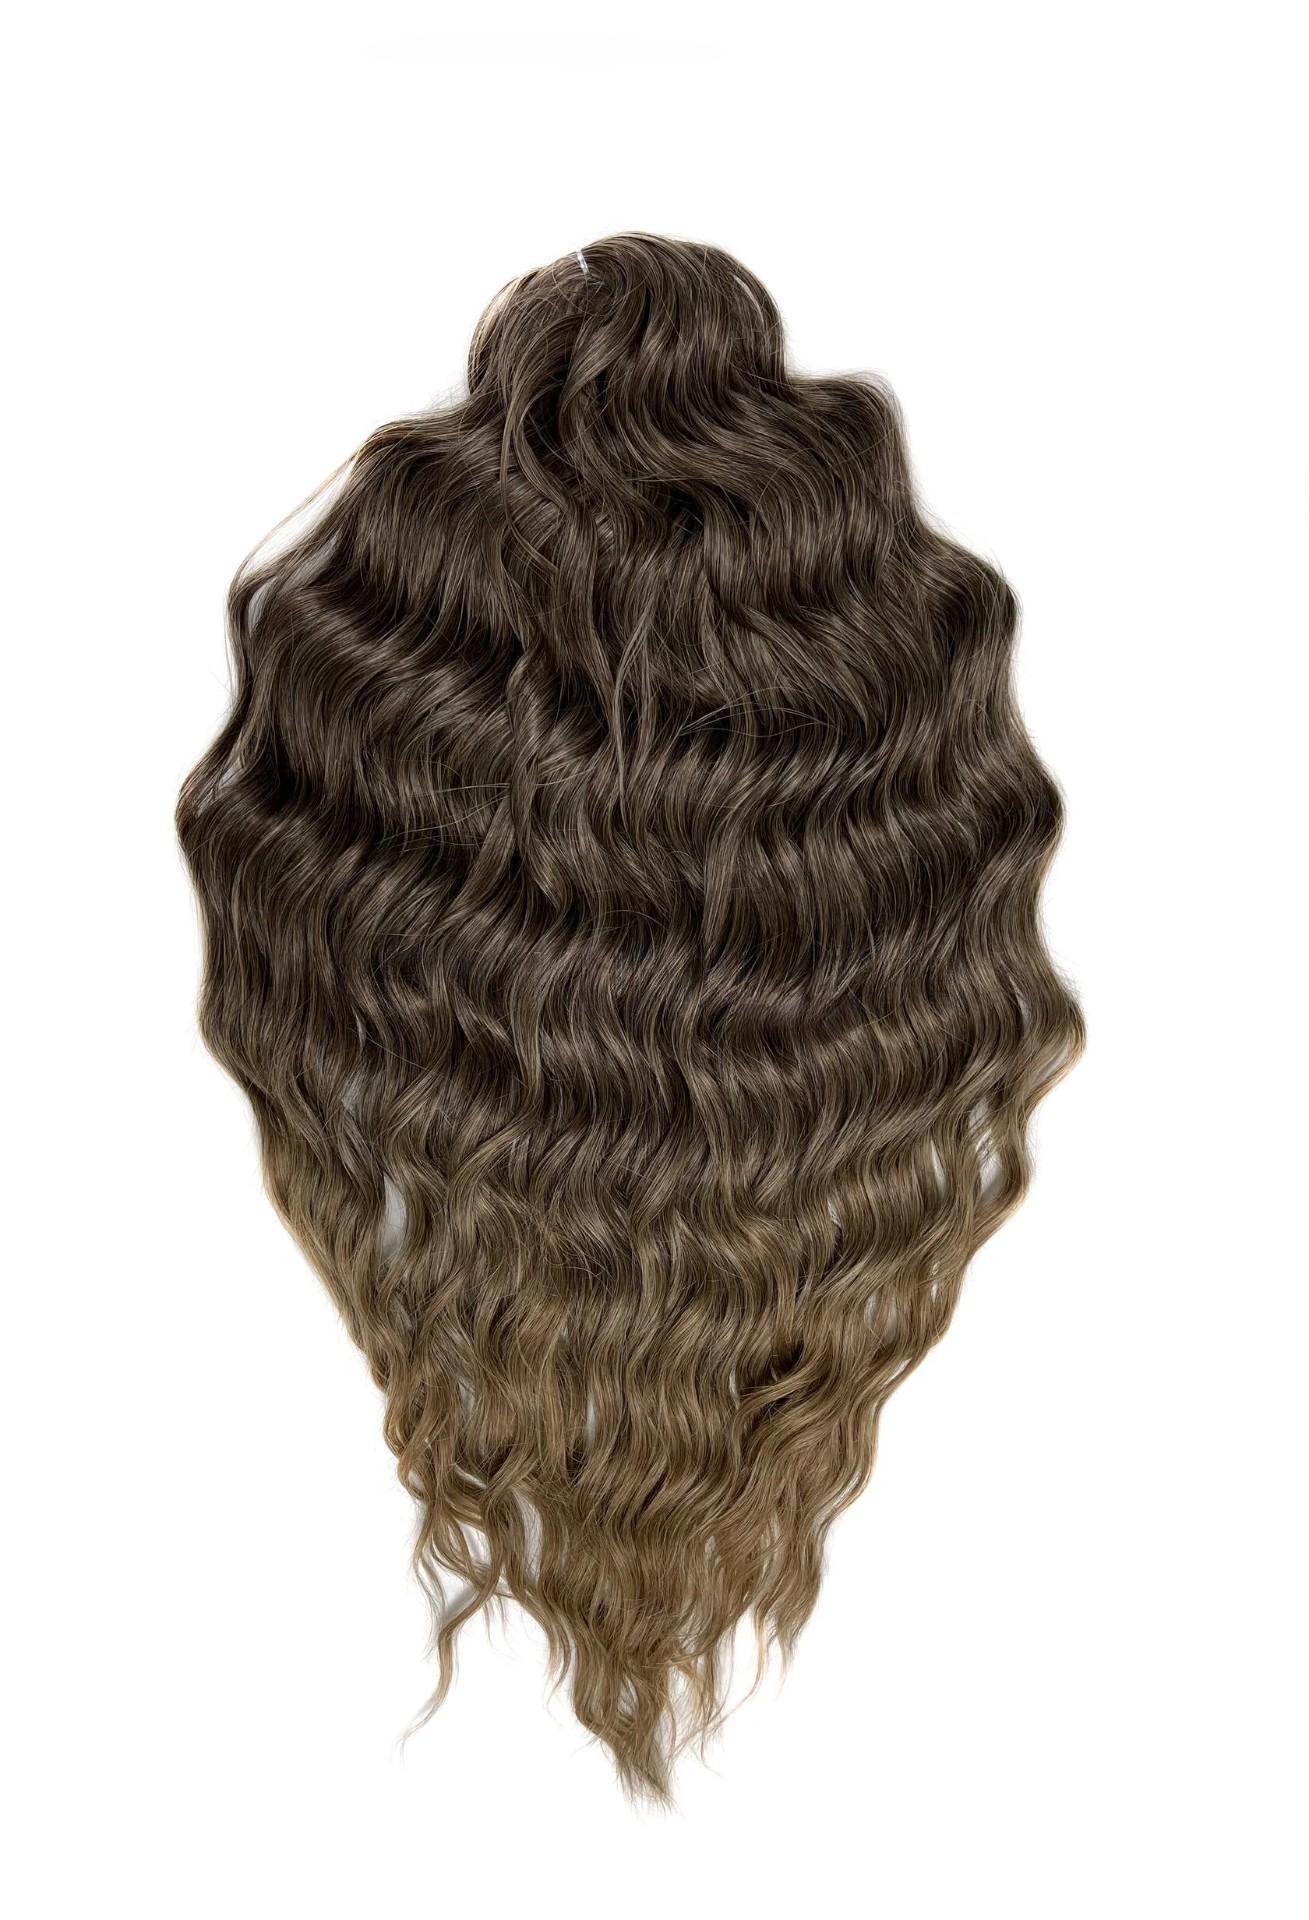 Афрокудри для плетения волос Anna T8 14 русый длина 60 вес 300г